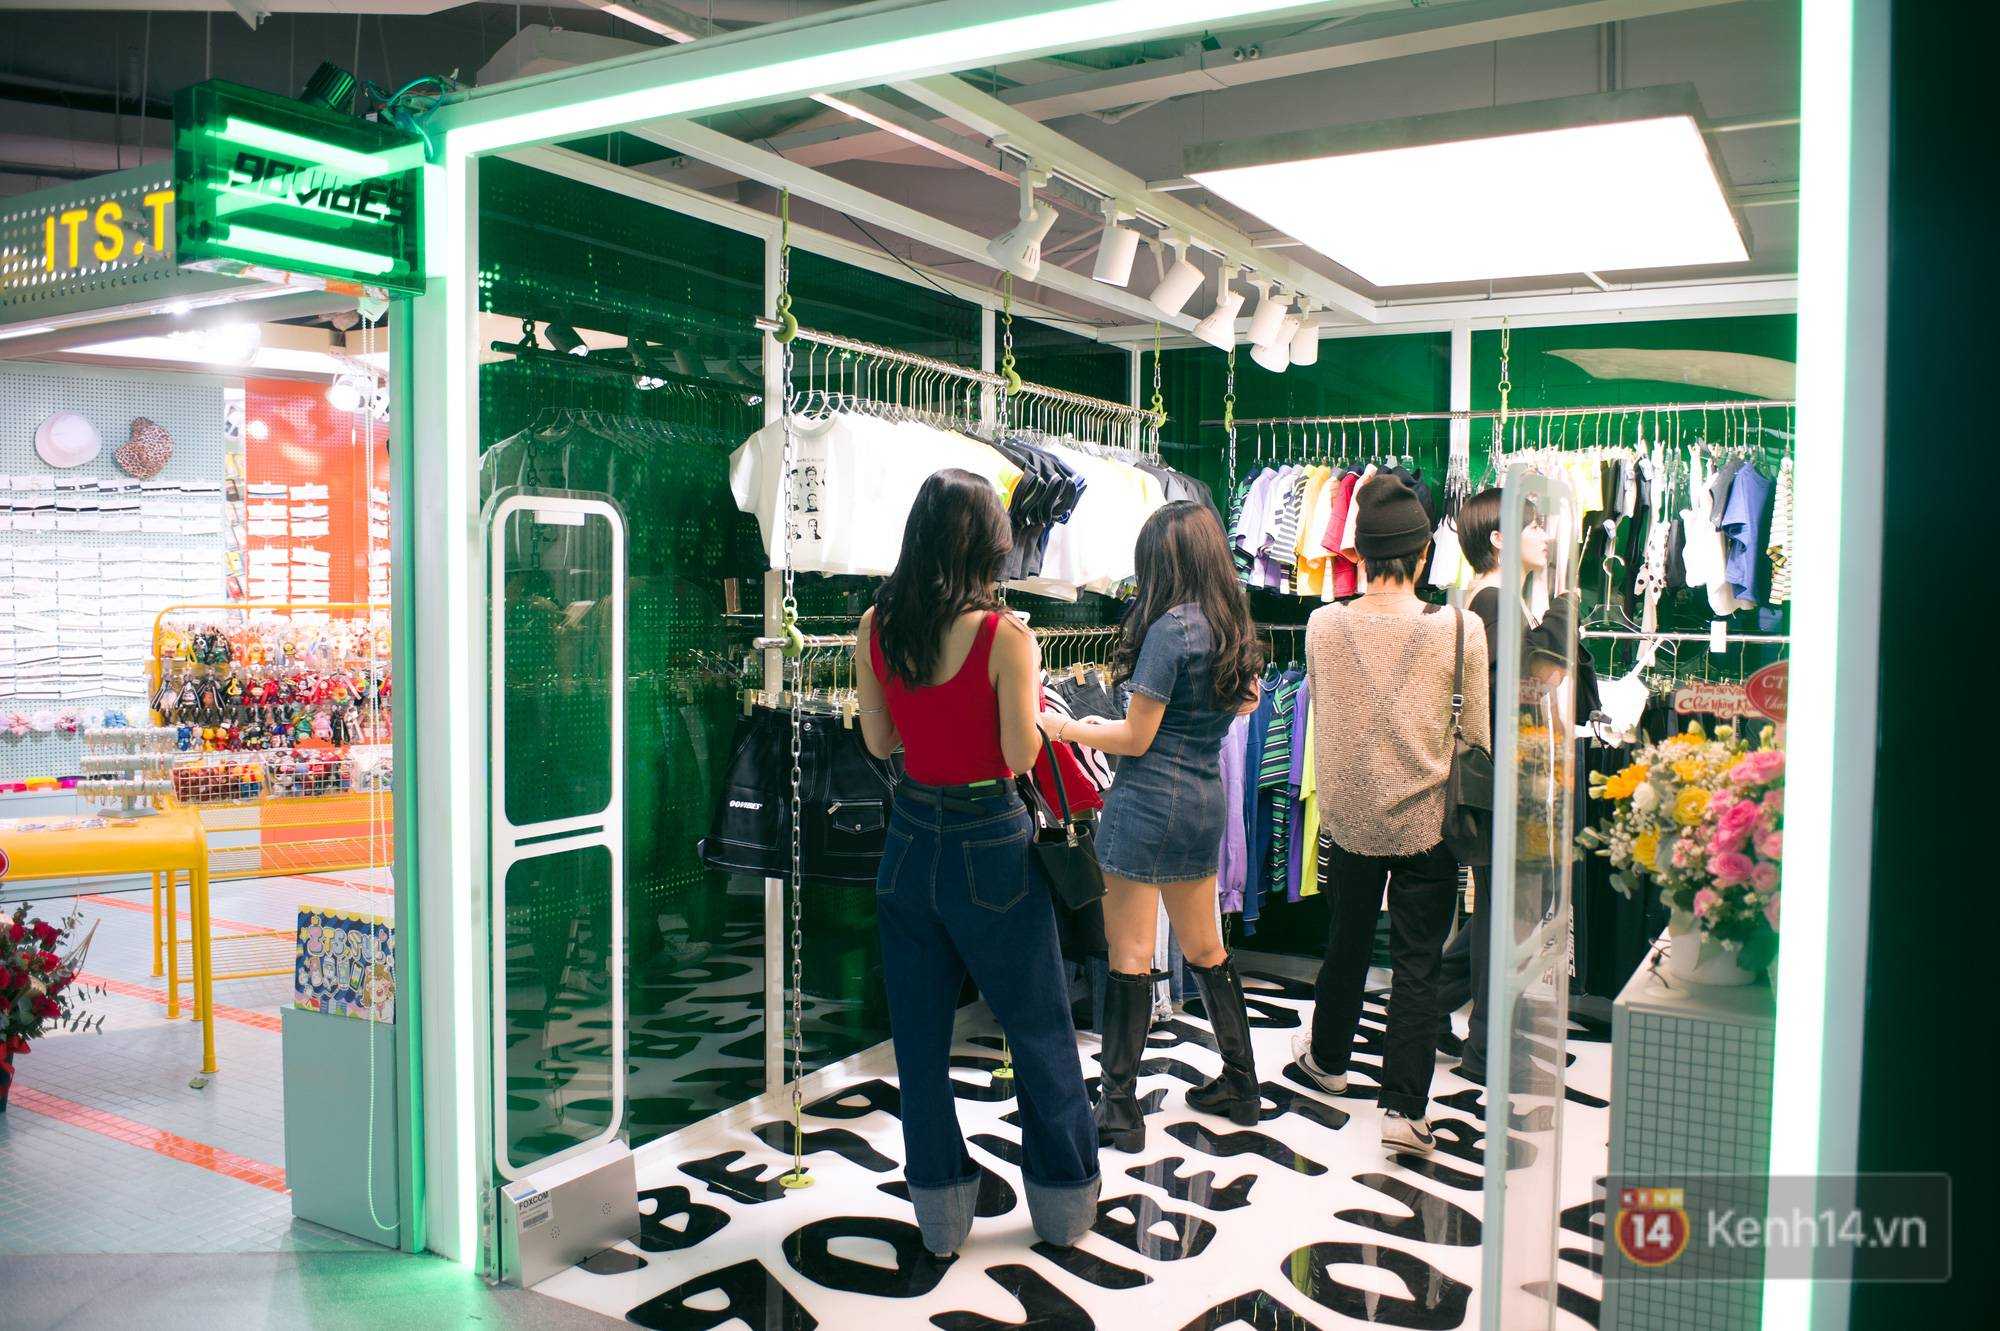 The New Playground khai trương khu mua sắm dưới lòng đất thứ 2 tại Sài Gòn, giới trẻ nhận xét: Mọi thứ đều “nhỉnh” hơn địa điểm cũ rất nhiều! - Ảnh 9.